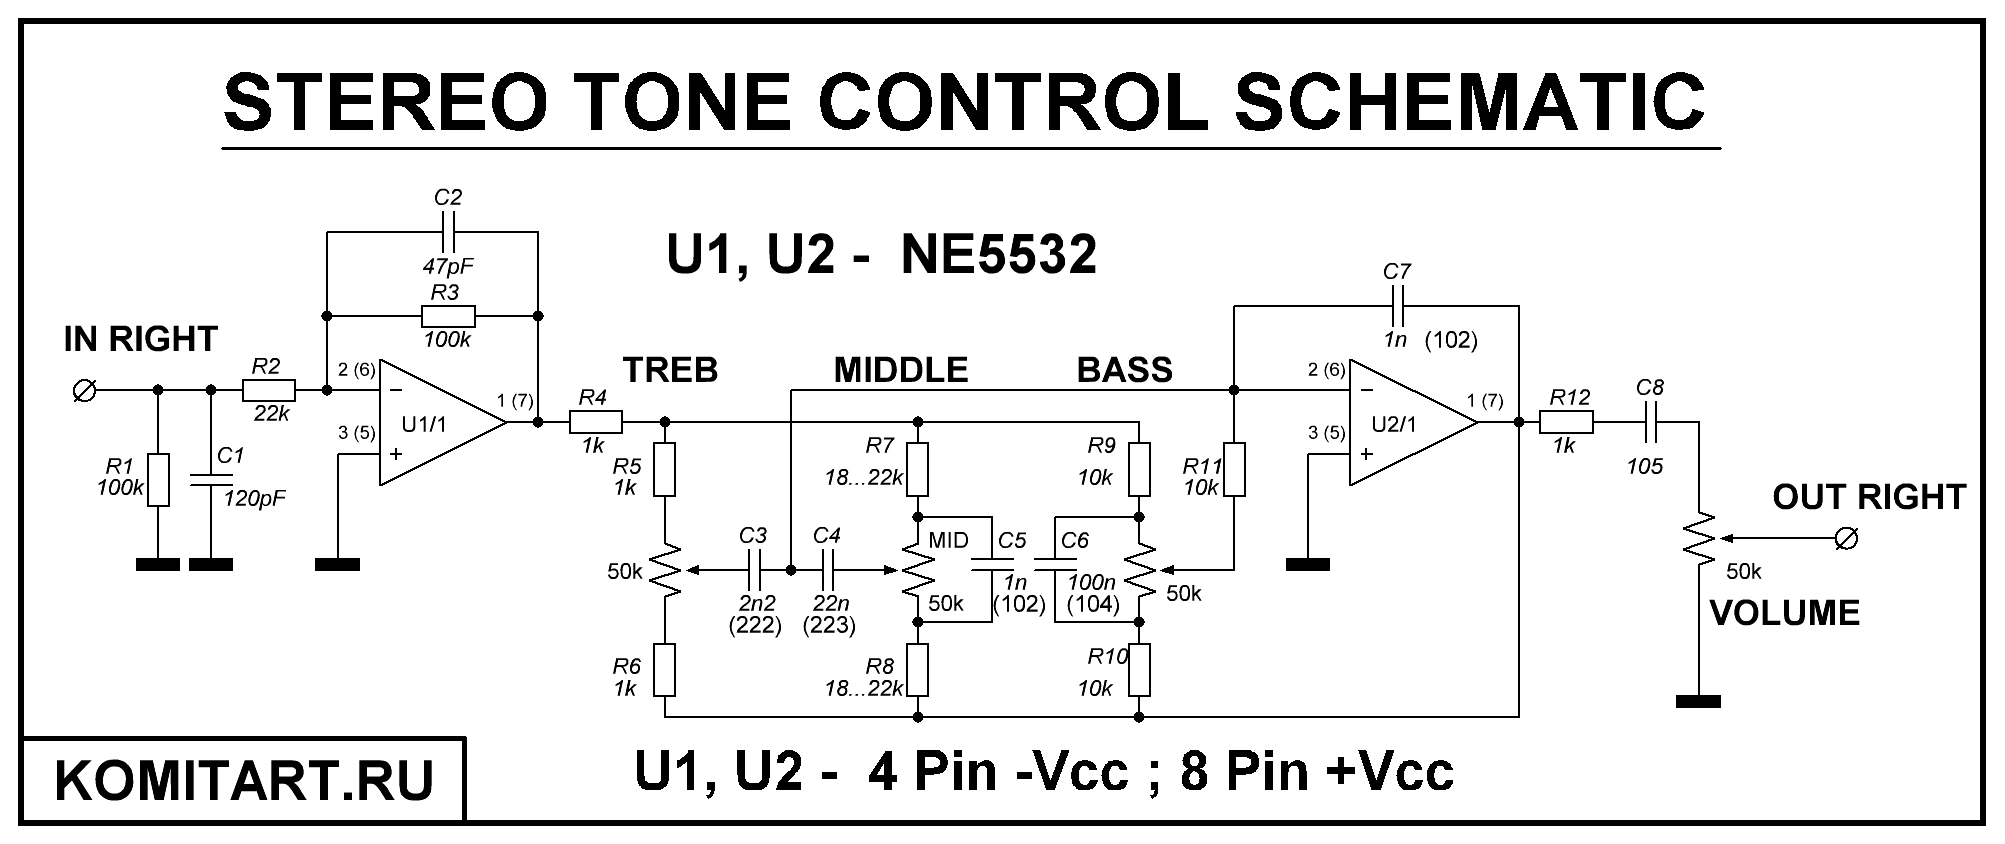 Stereo tone control NE5532. 